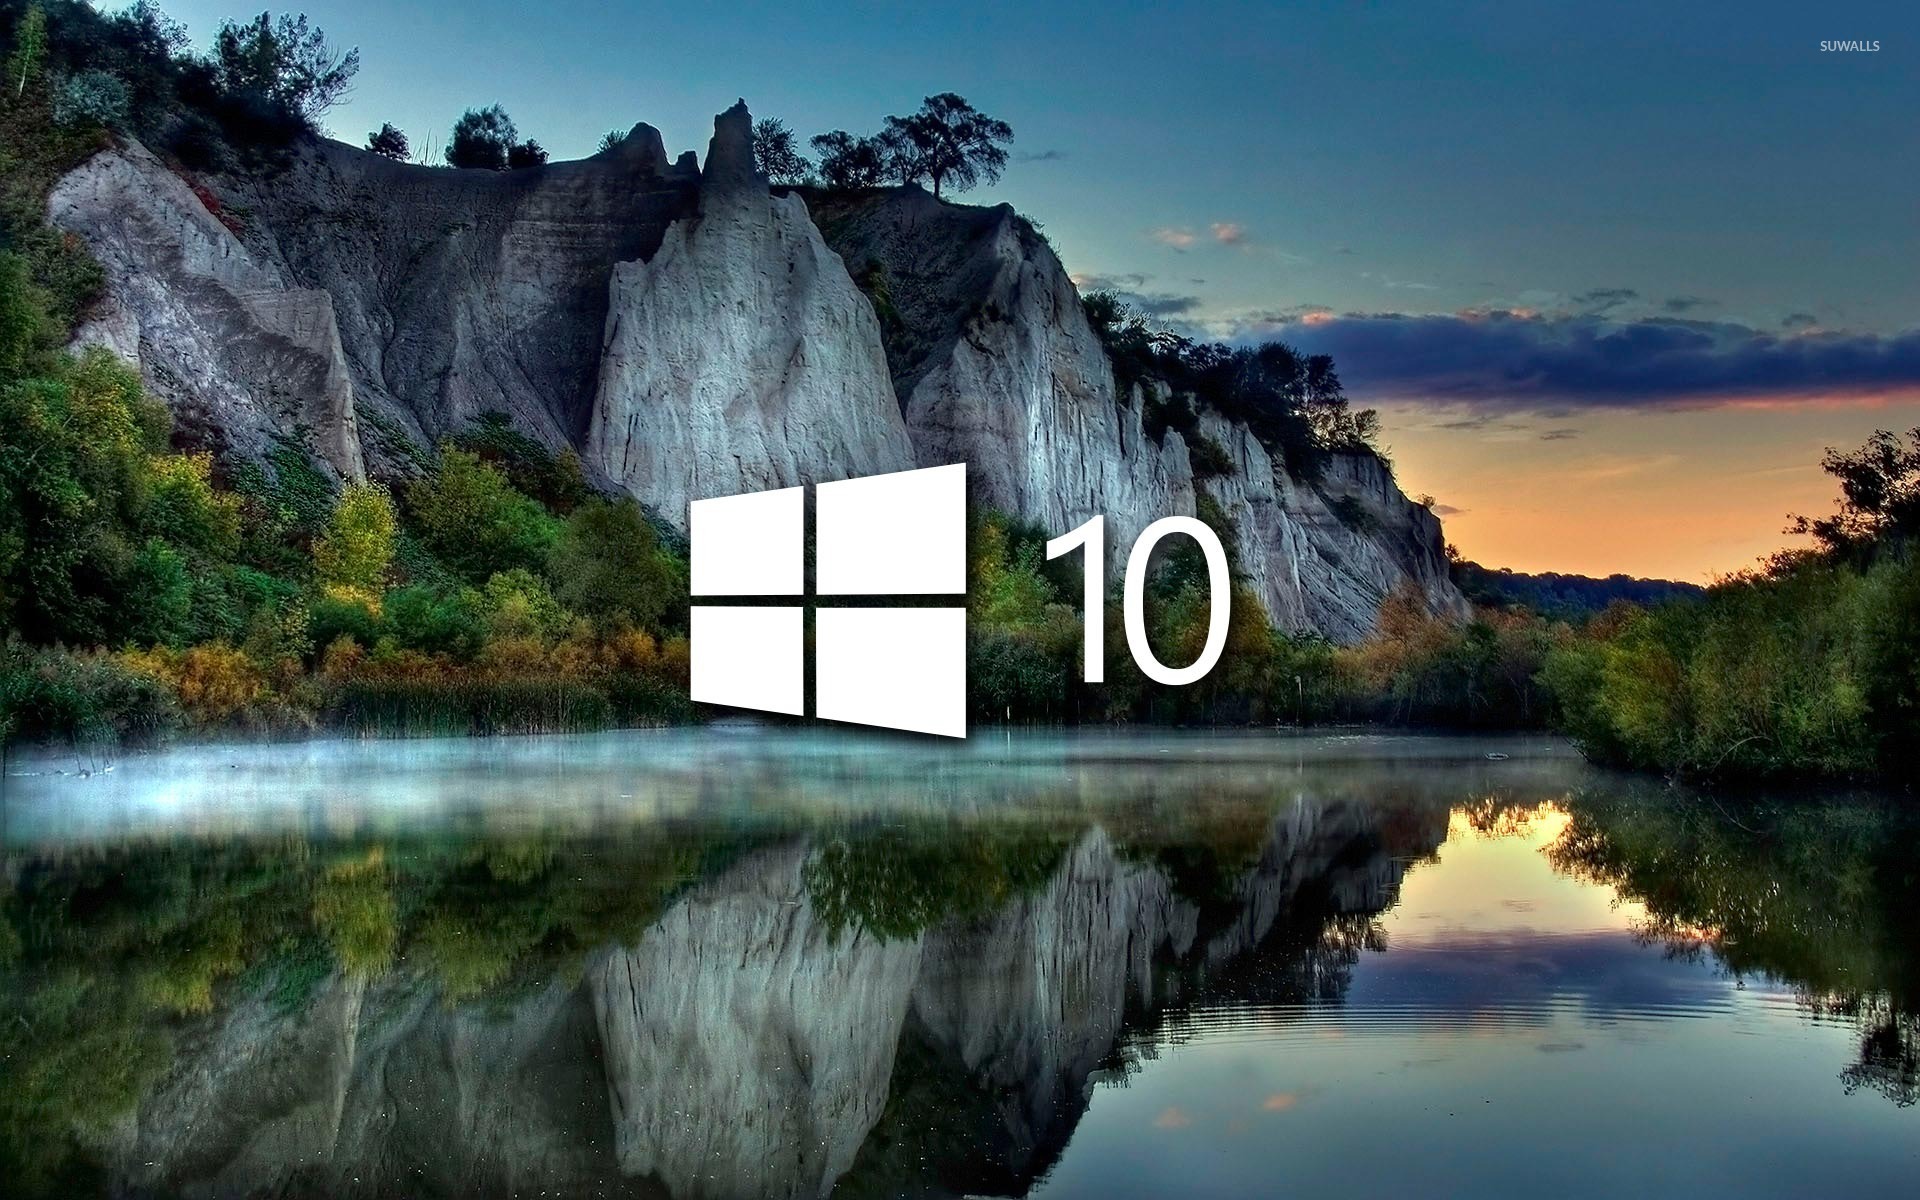 Фоны рабочего стола windows изменить. Красивая заставка виндовс 10. Фоновый рисунок виндовс 10. Рисунок рабочего стола Windows 10. Картинка для фона рабочего стола Windows 10.